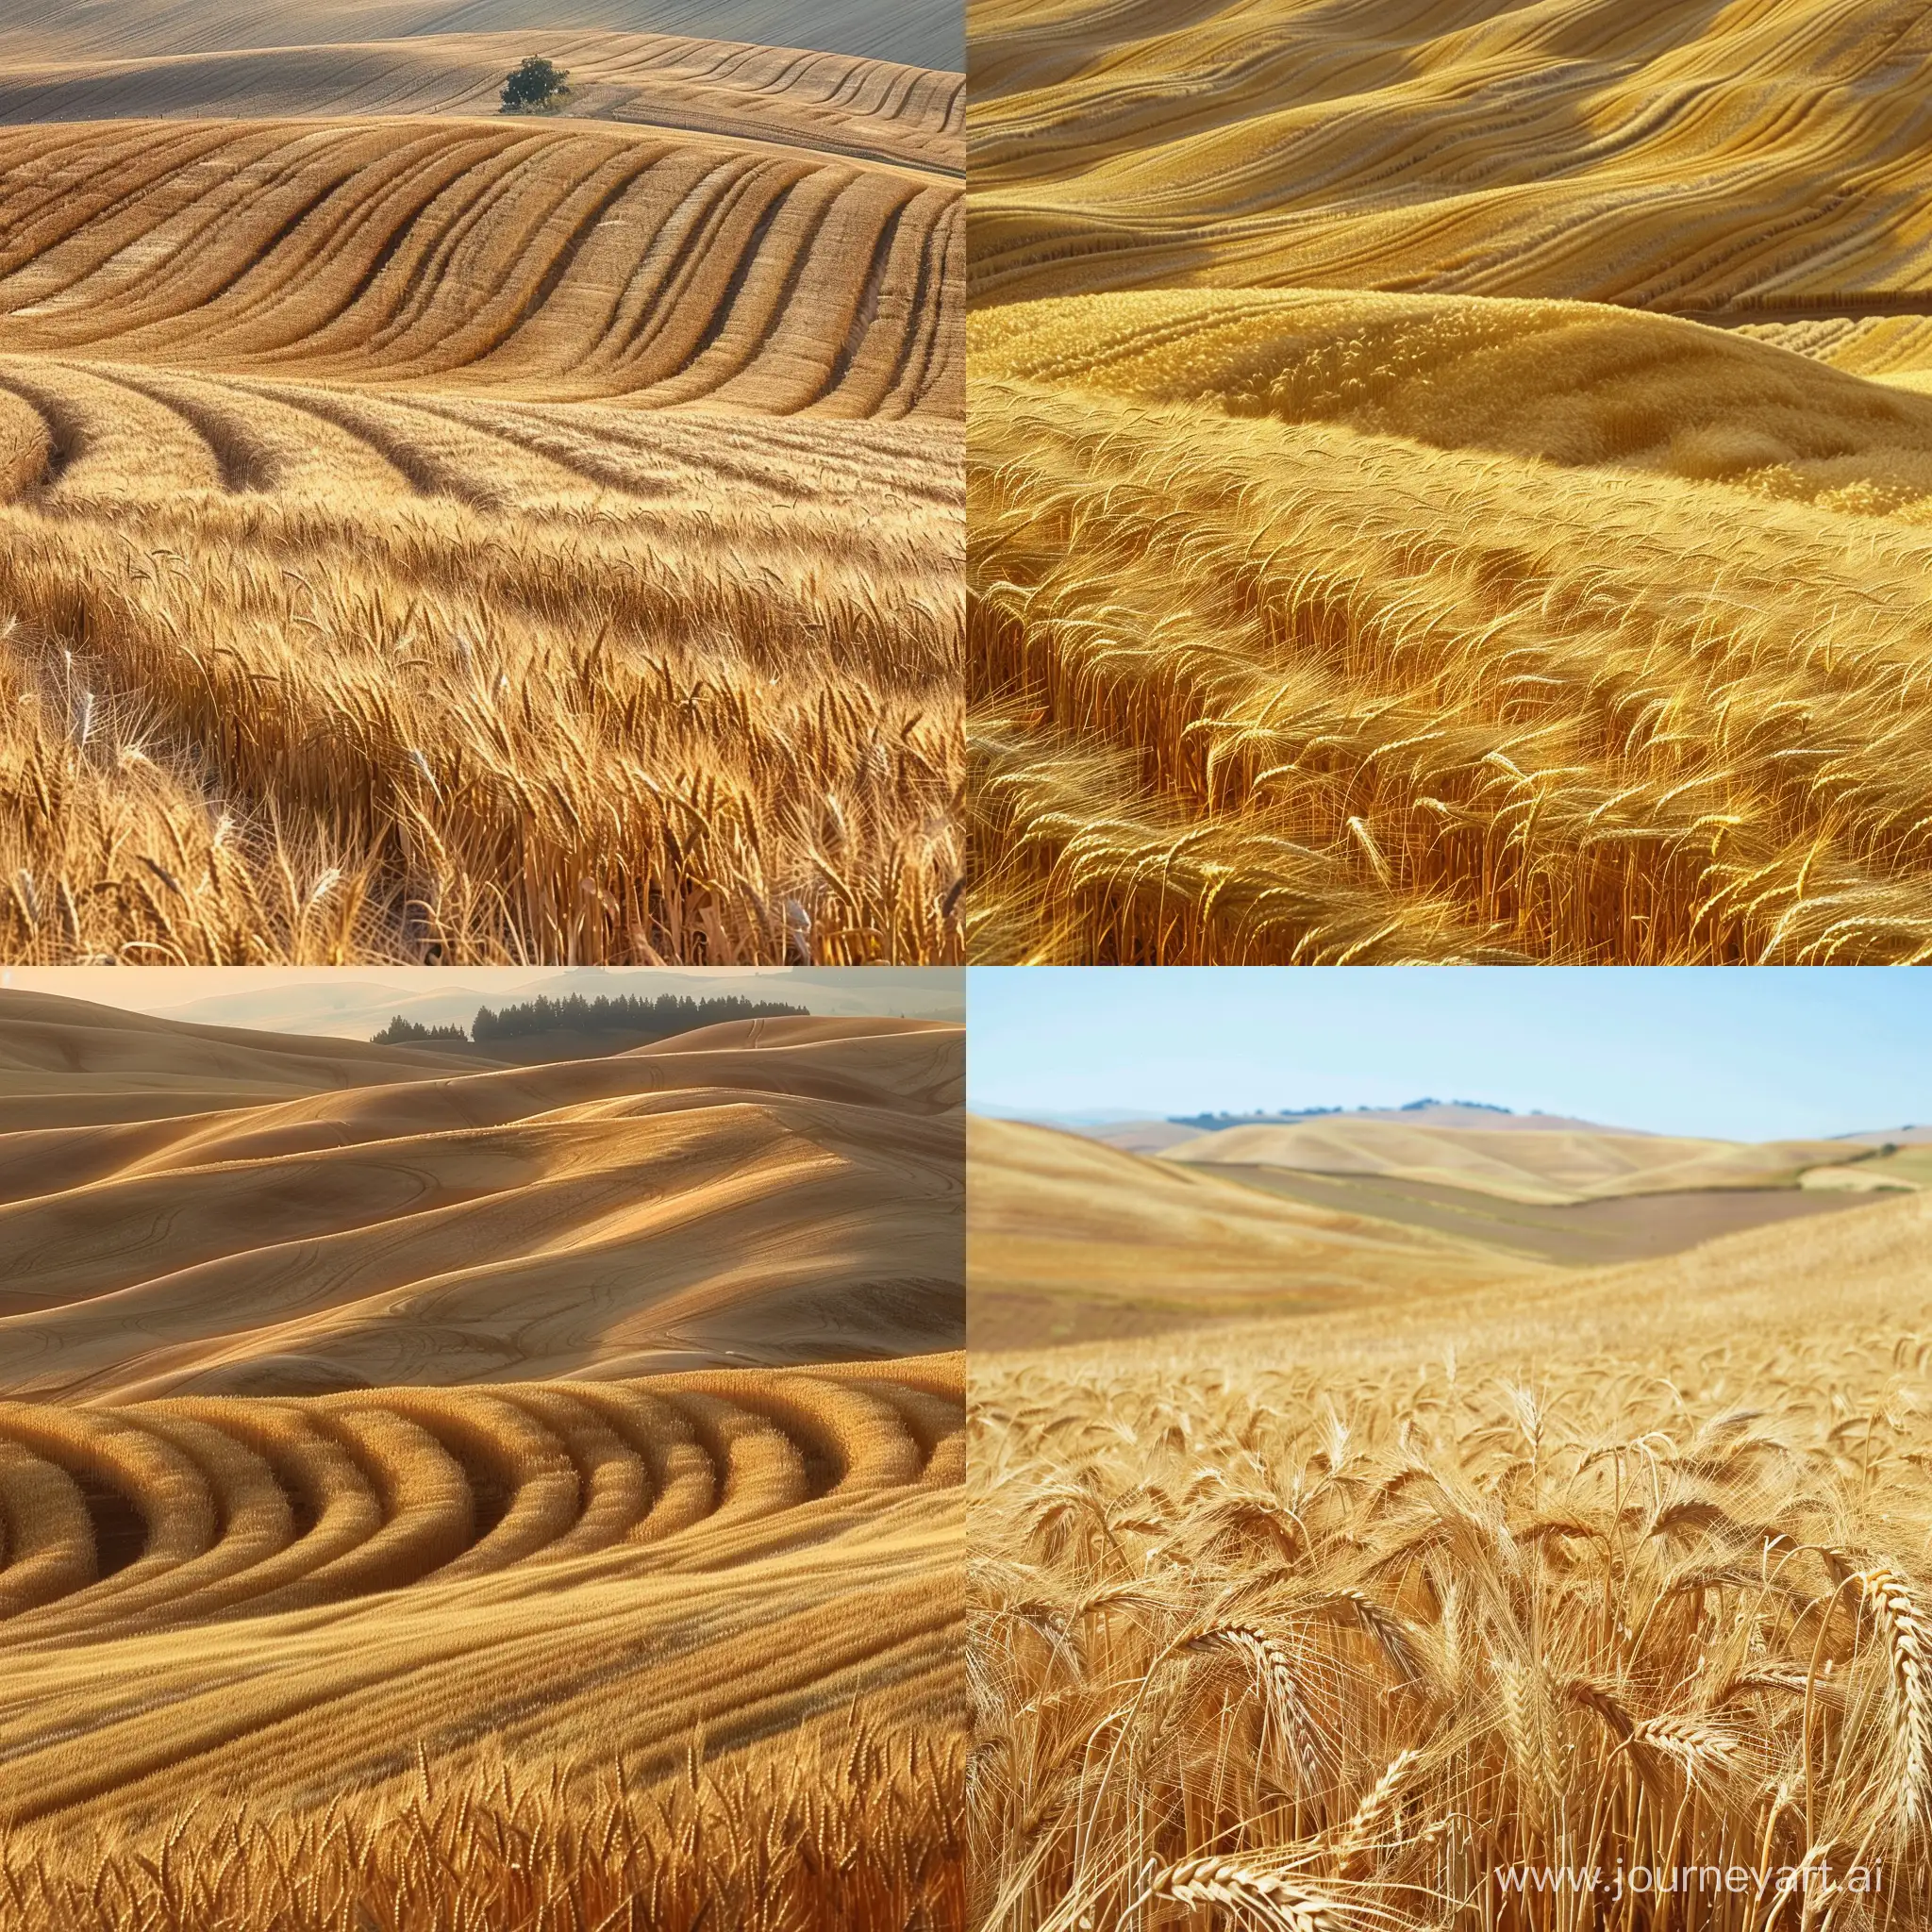 холмистая местность, засеянная золотистой пшеницей